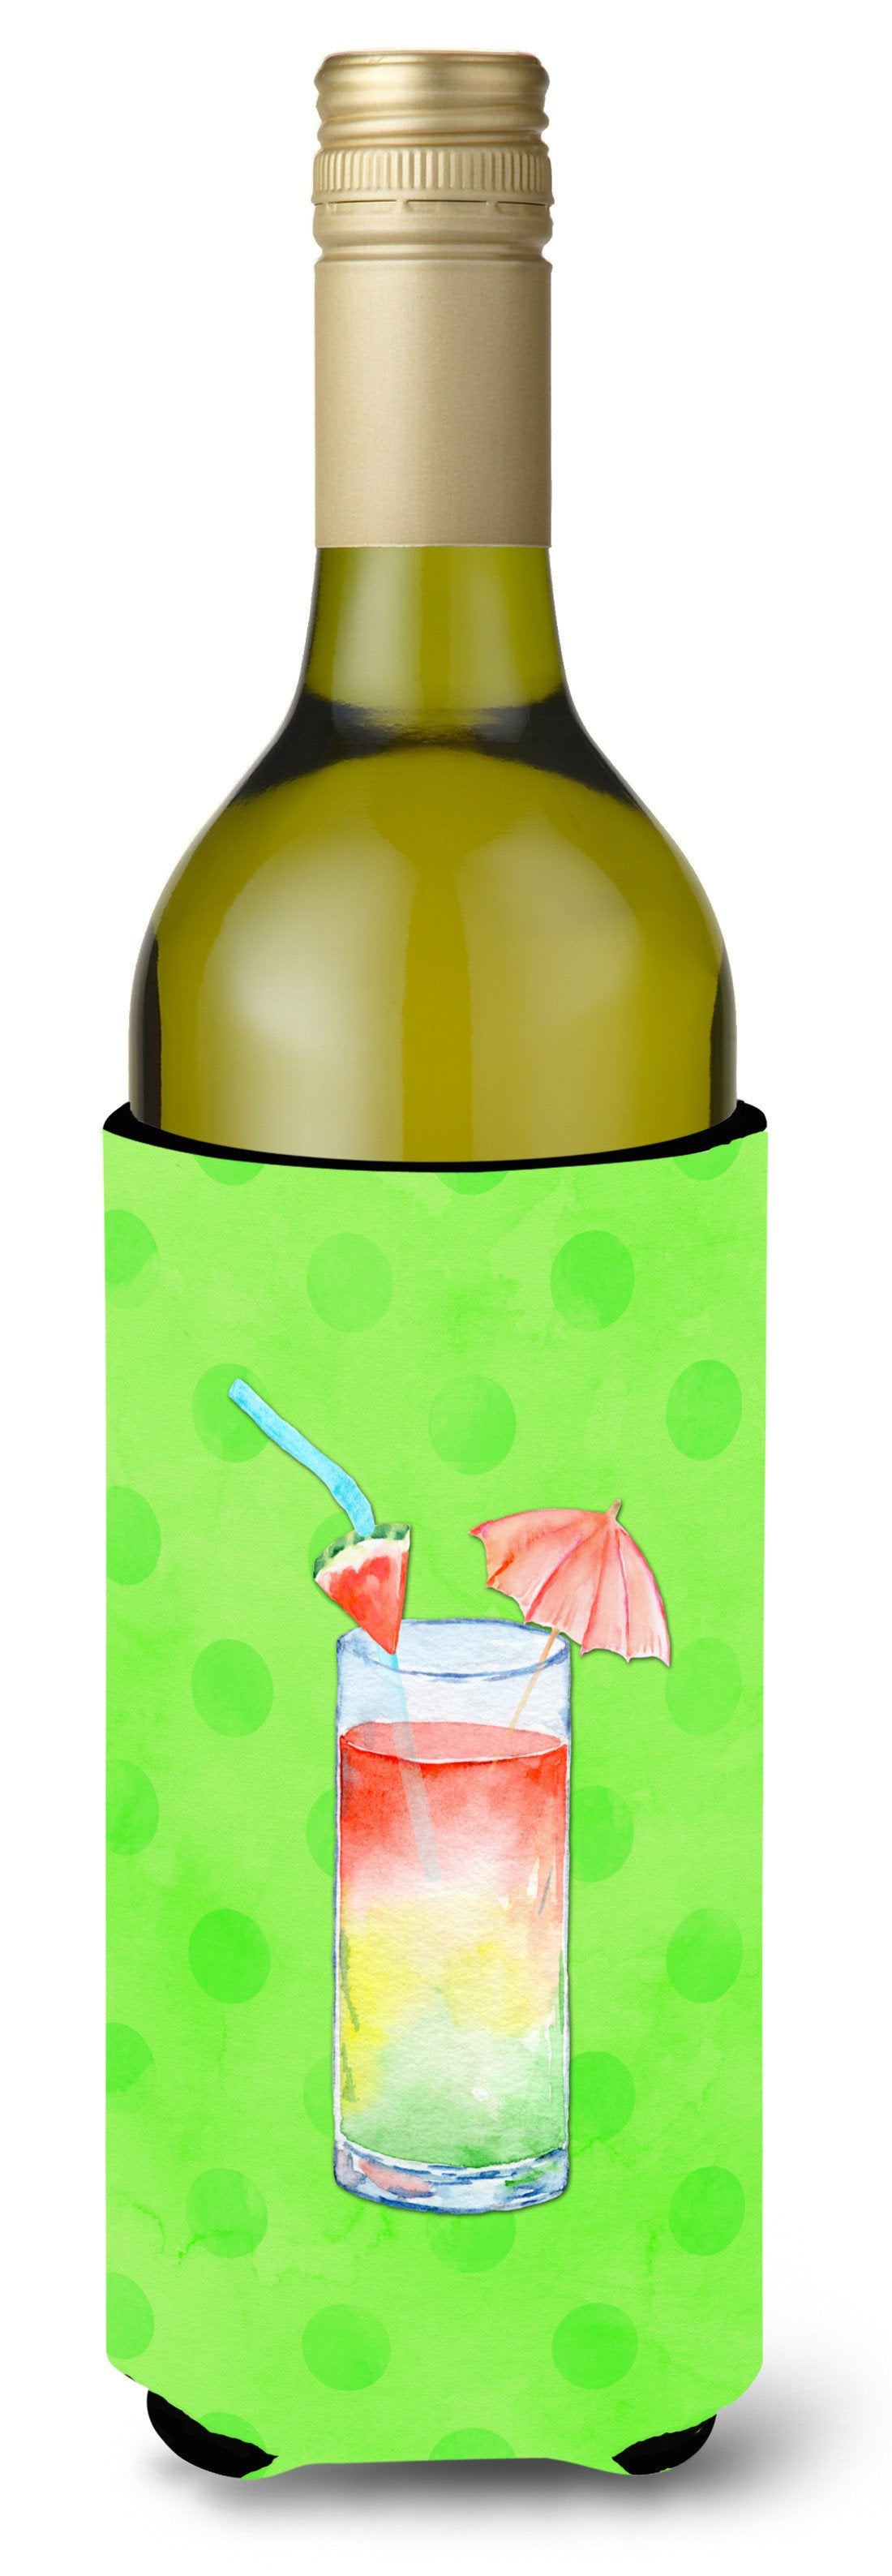 Umberella Cocktail Green Polkadot Wine Bottle Beverge Insulator Hugger BB8210LITERK by Caroline's Treasures